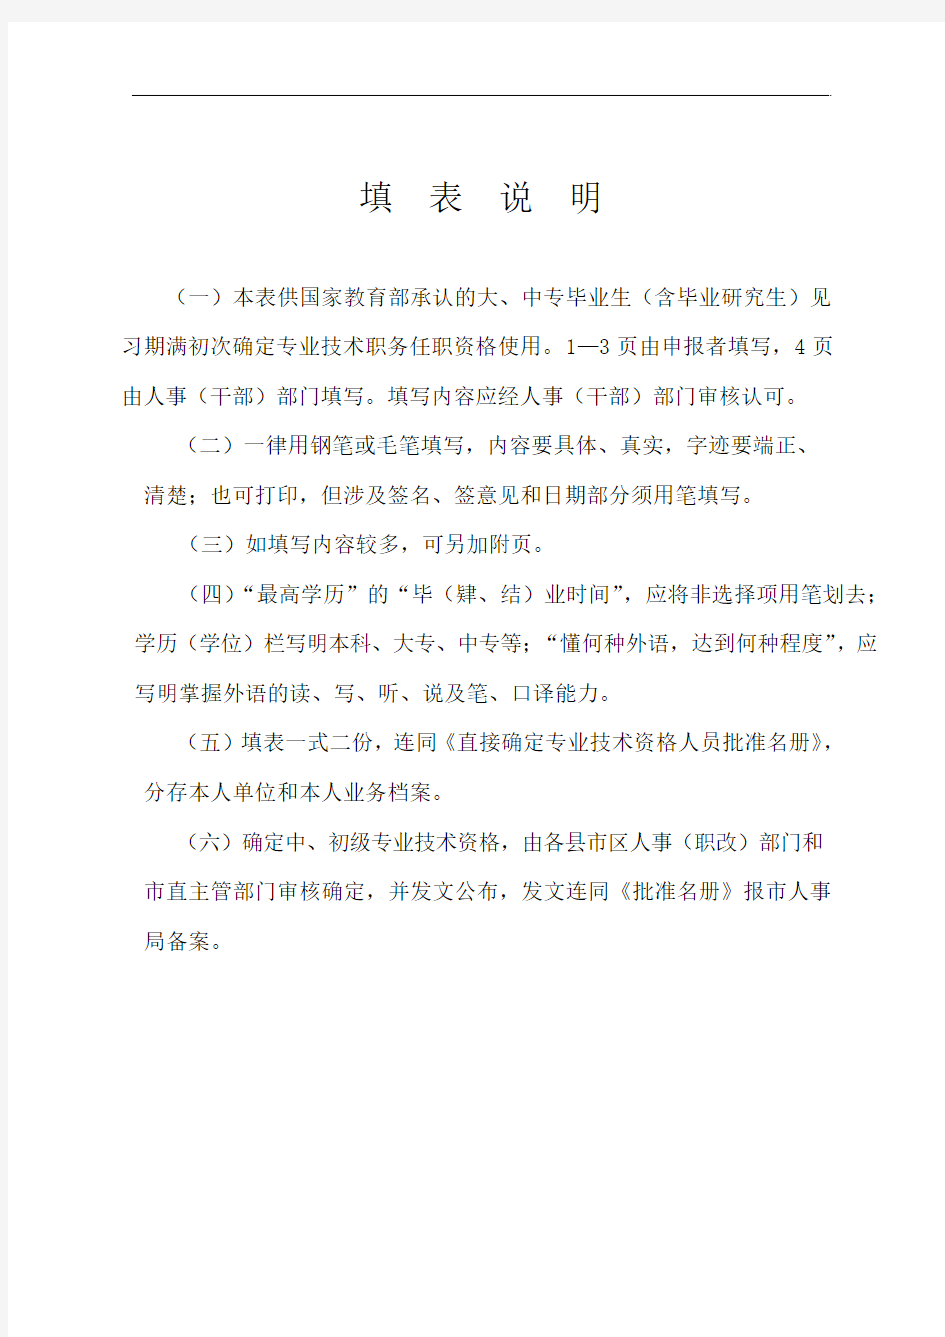 台州市人事局颁发  初定专业技术职务任职资格表